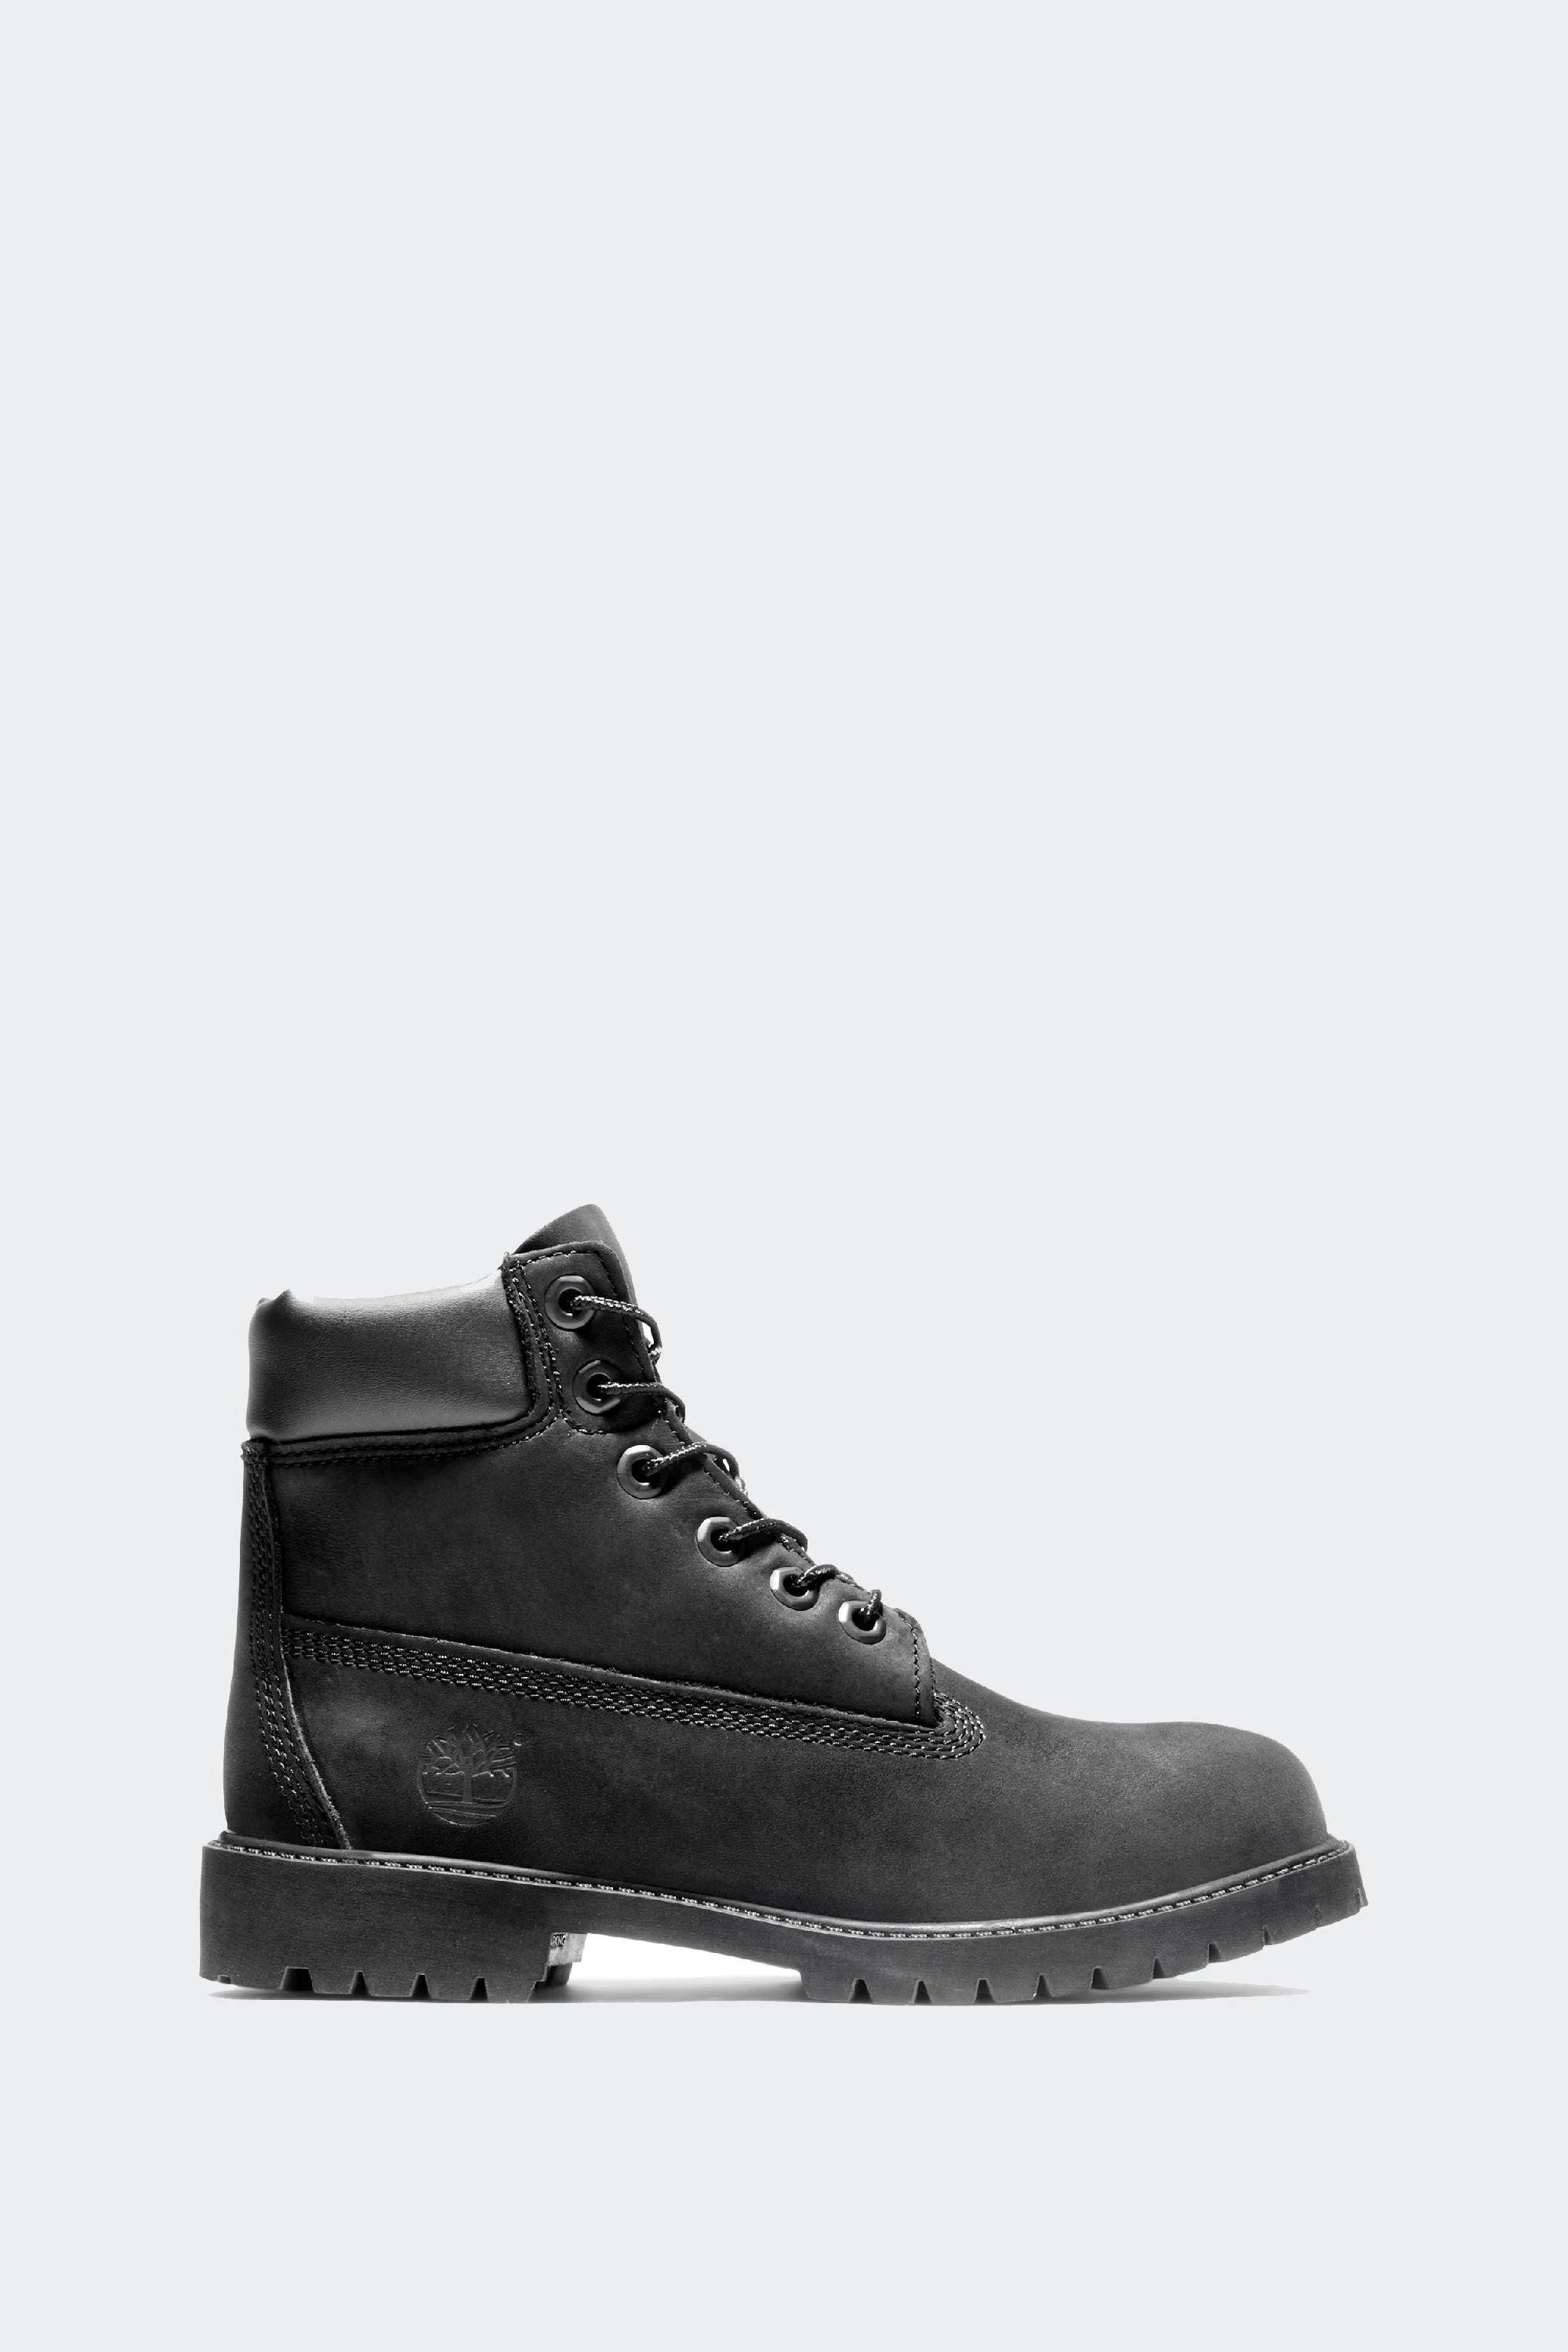 Stylish Black Timberland Waterproof Boots: Size 4.5 | Image